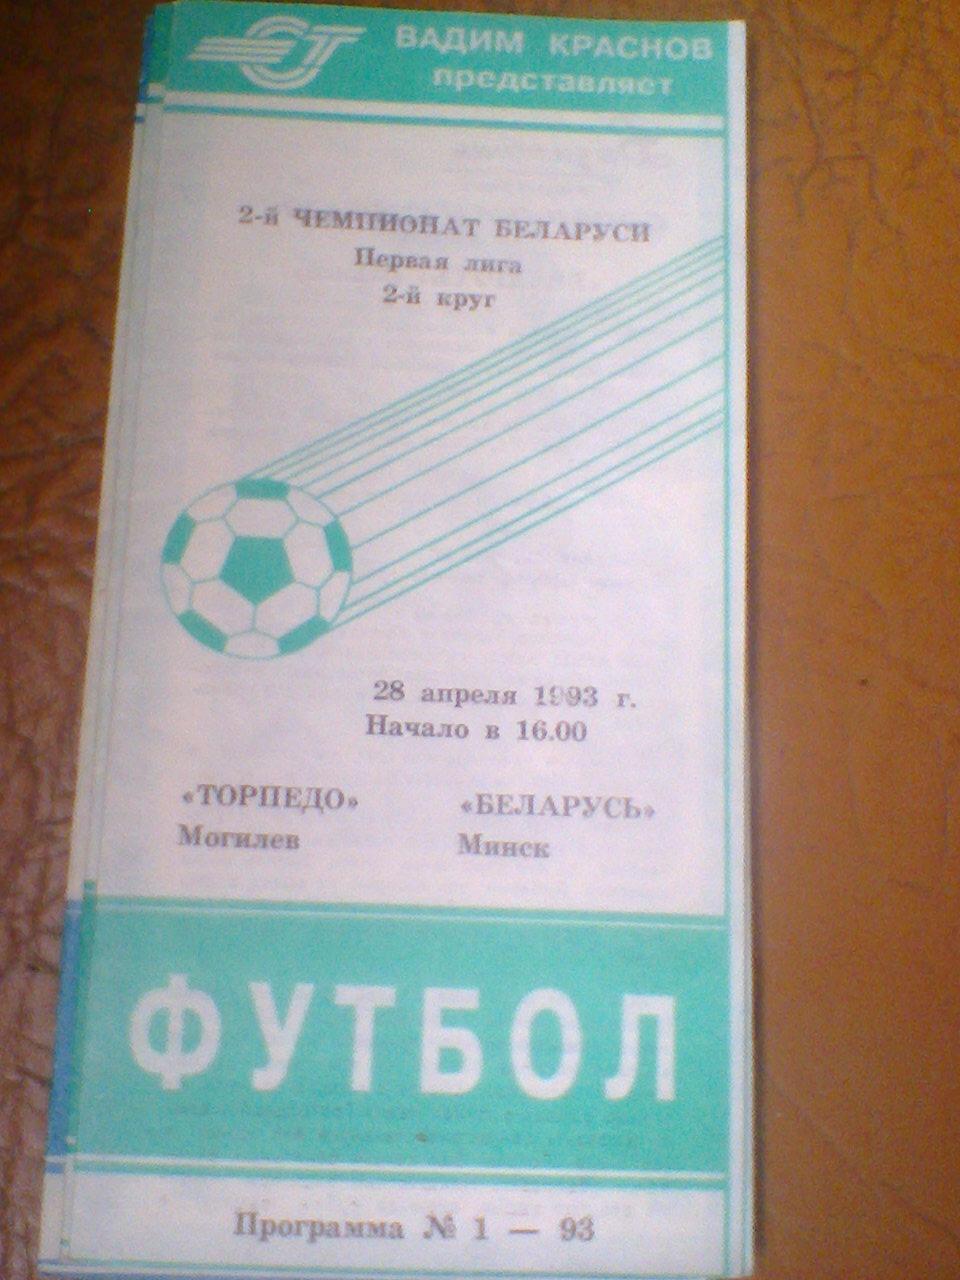 28.04.1993--Торпедо Могилев--Беларусь Минск